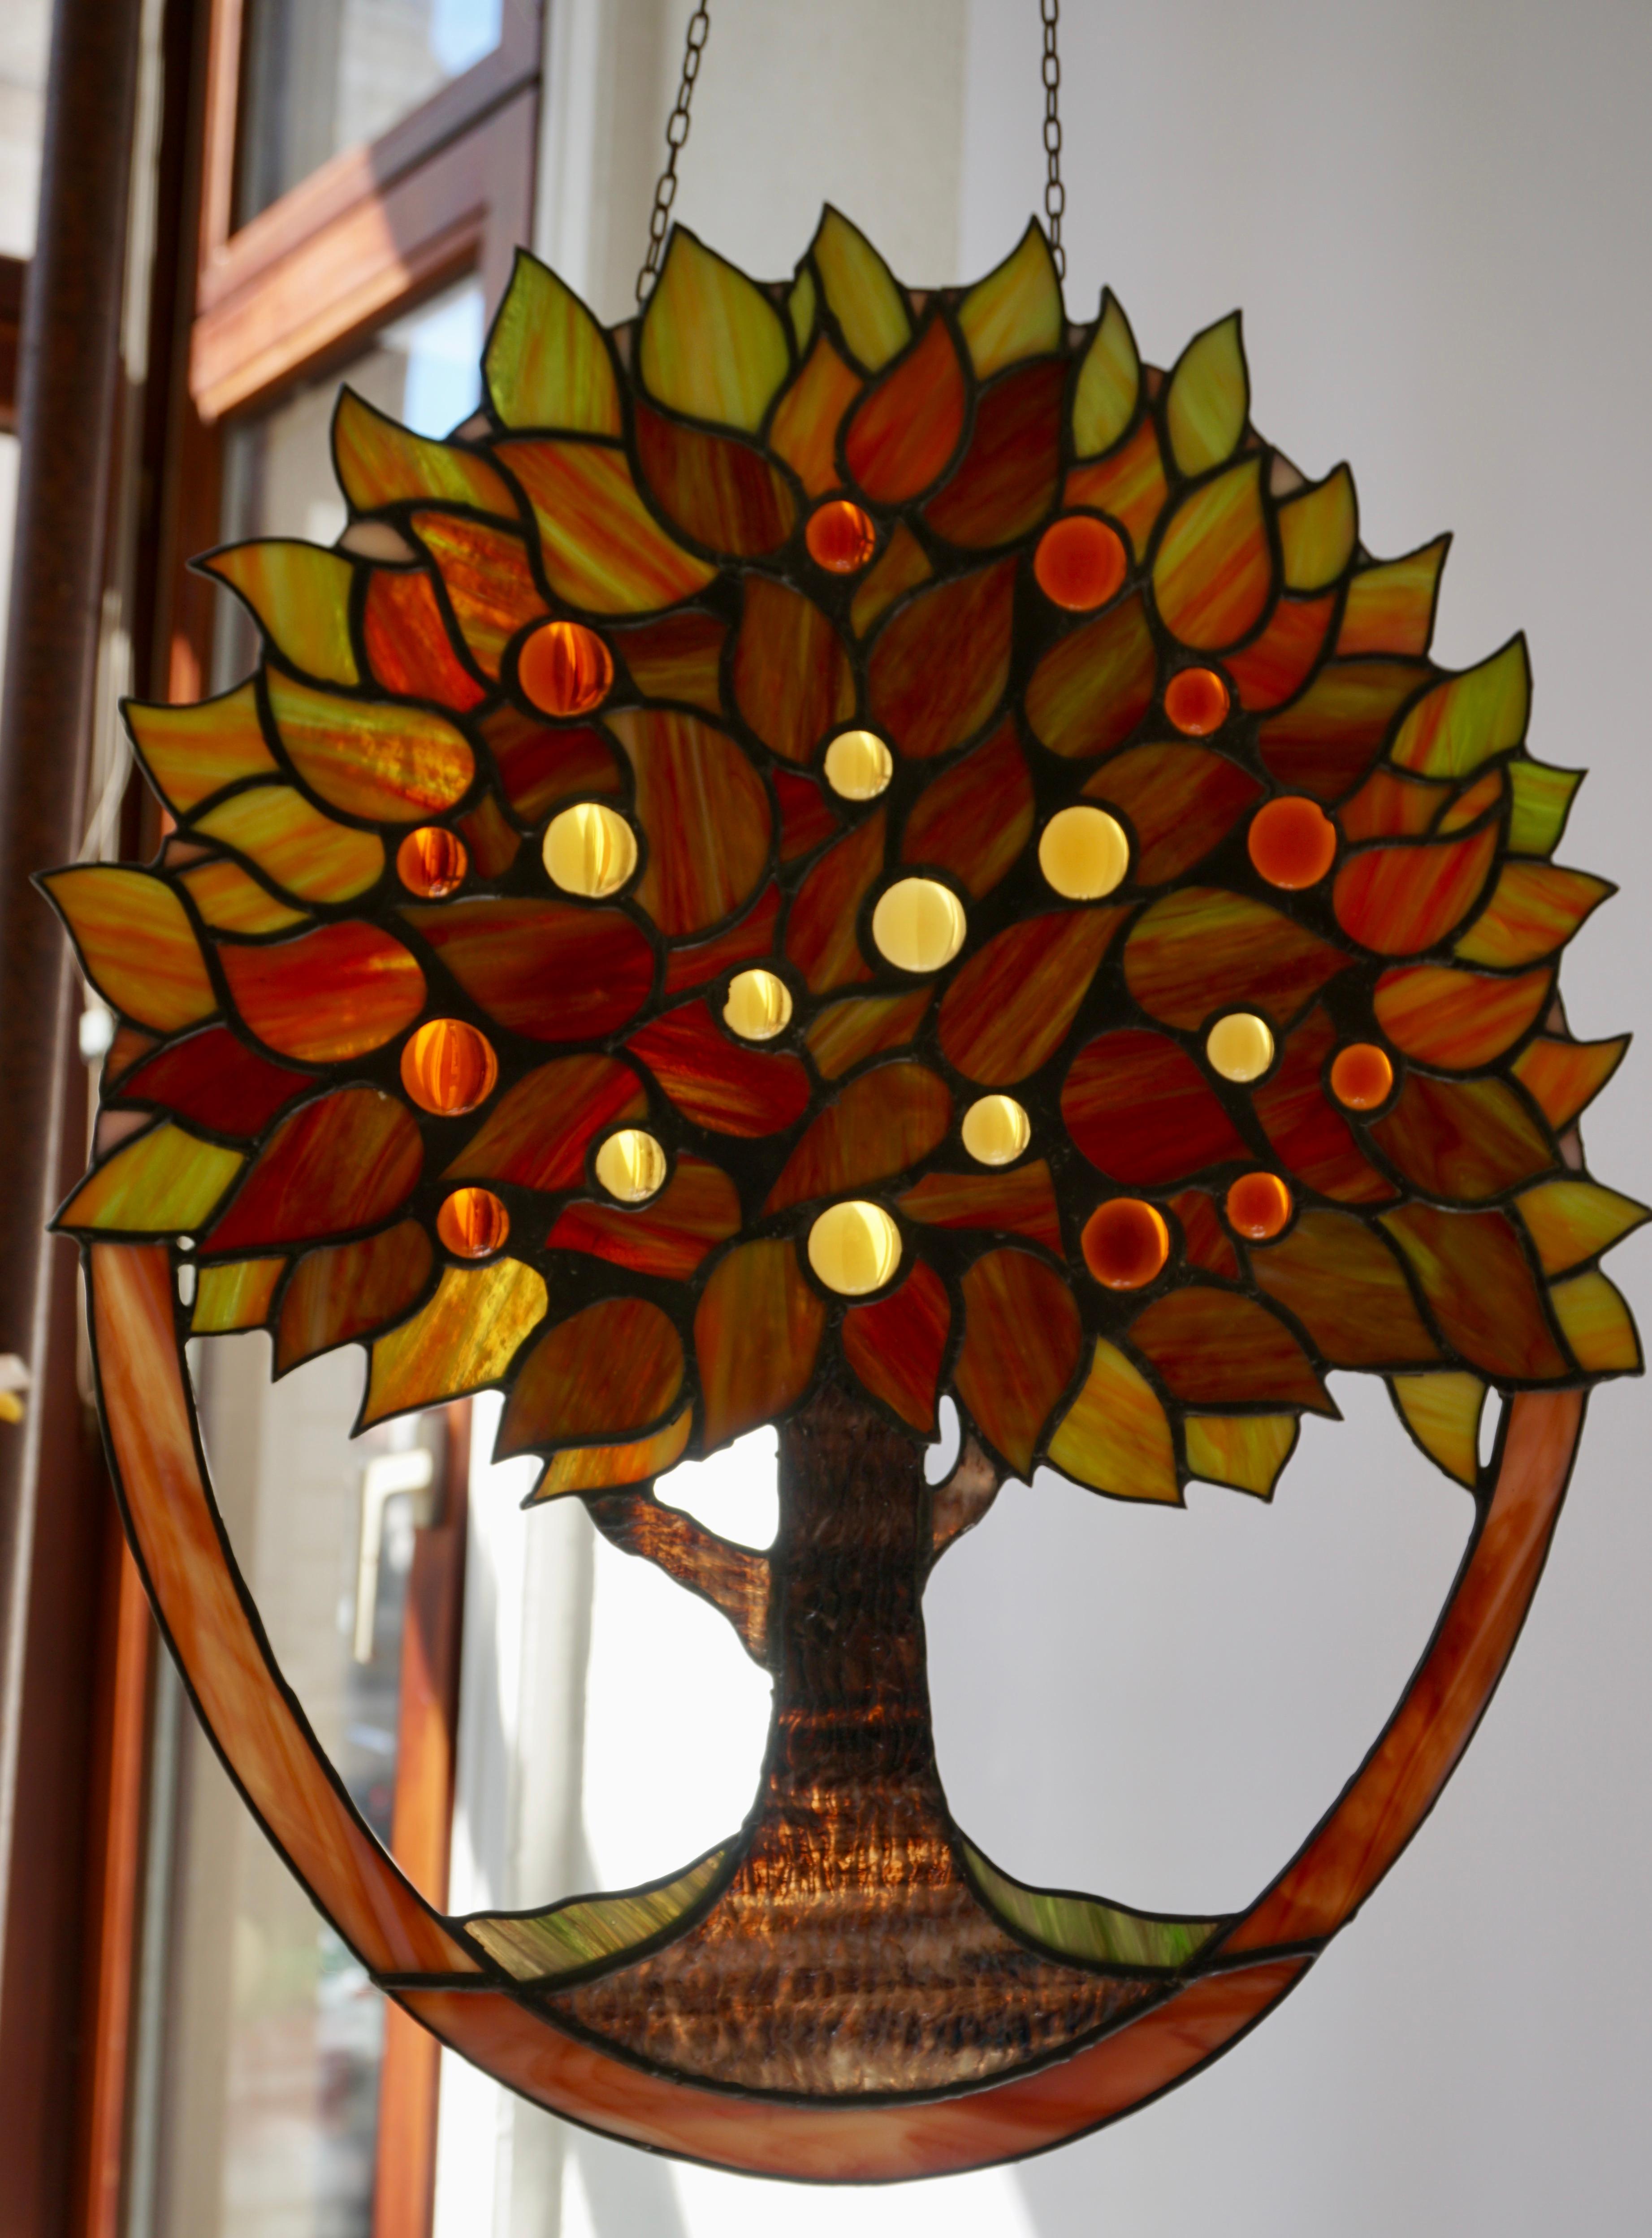 Biete diese wunderschöne Glasmalerei auf Kette an. In Form eines Blumenbaums mit verschiedenen Farben und Mustern.
Außerdem gibt es viele Schattierungen von Grün, Rot, Gelb und Orange.
Maße: Höhe 45 cm.
Breite 39 cm.